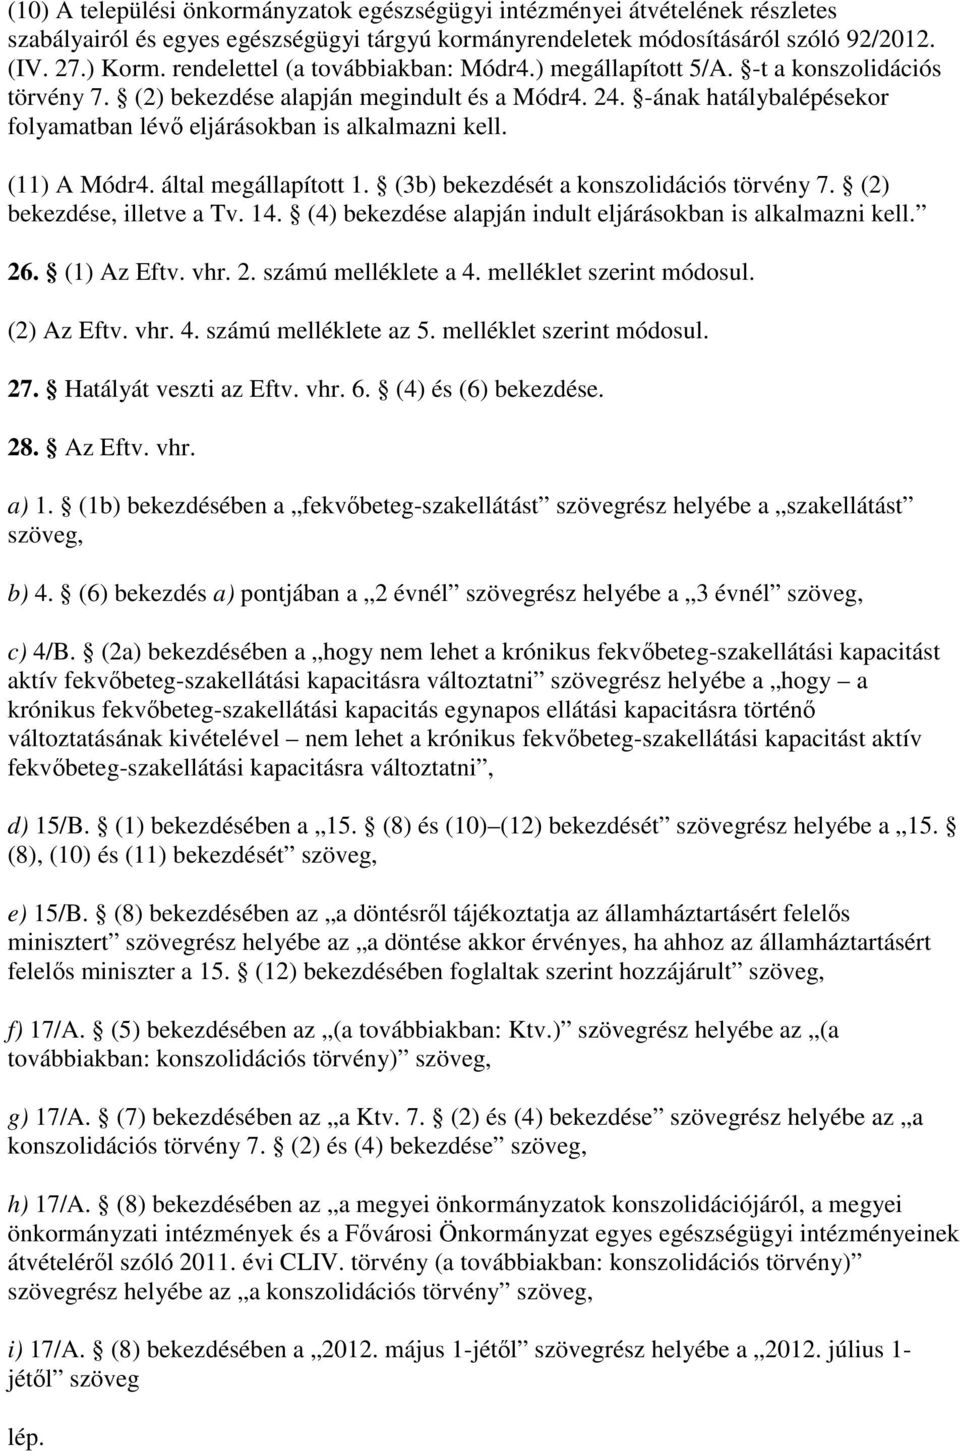 -ának hatálybalépésekor folyamatban lévı eljárásokban is alkalmazni kell. (11) A Módr4. által megállapított 1. (3b) bekezdését a konszolidációs törvény 7. (2) bekezdése, illetve a Tv. 14.